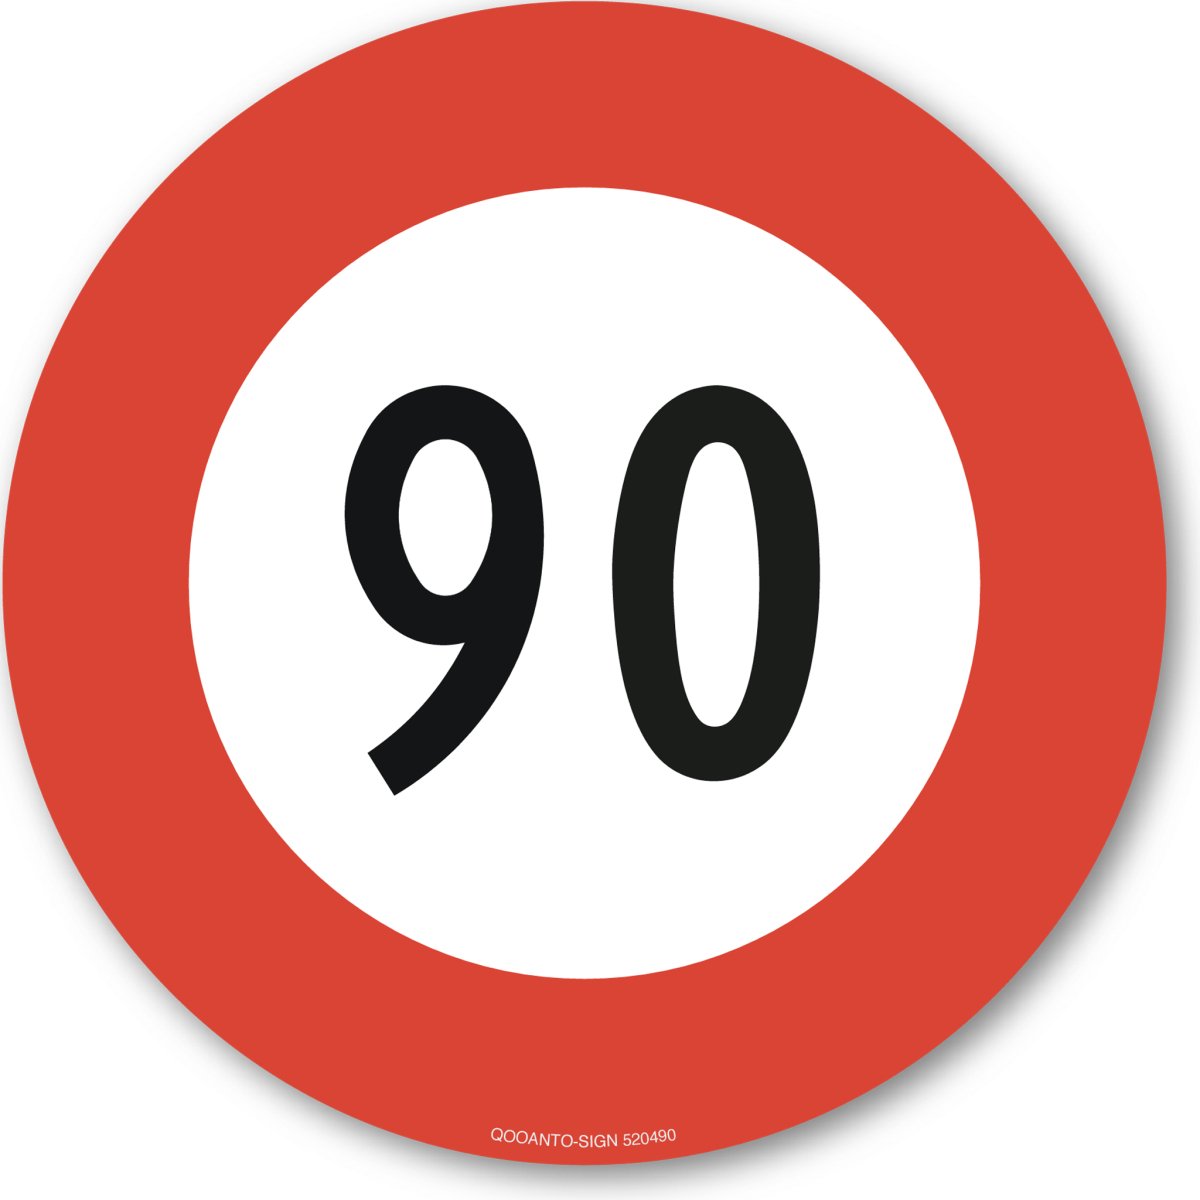 90 Höchstgeschwindigkeit Verkehrsschild oder Aufkleber aus Alu-Verbund oder Selbstklebefolie mit UV-Schutz - QOOANTO-SIGN